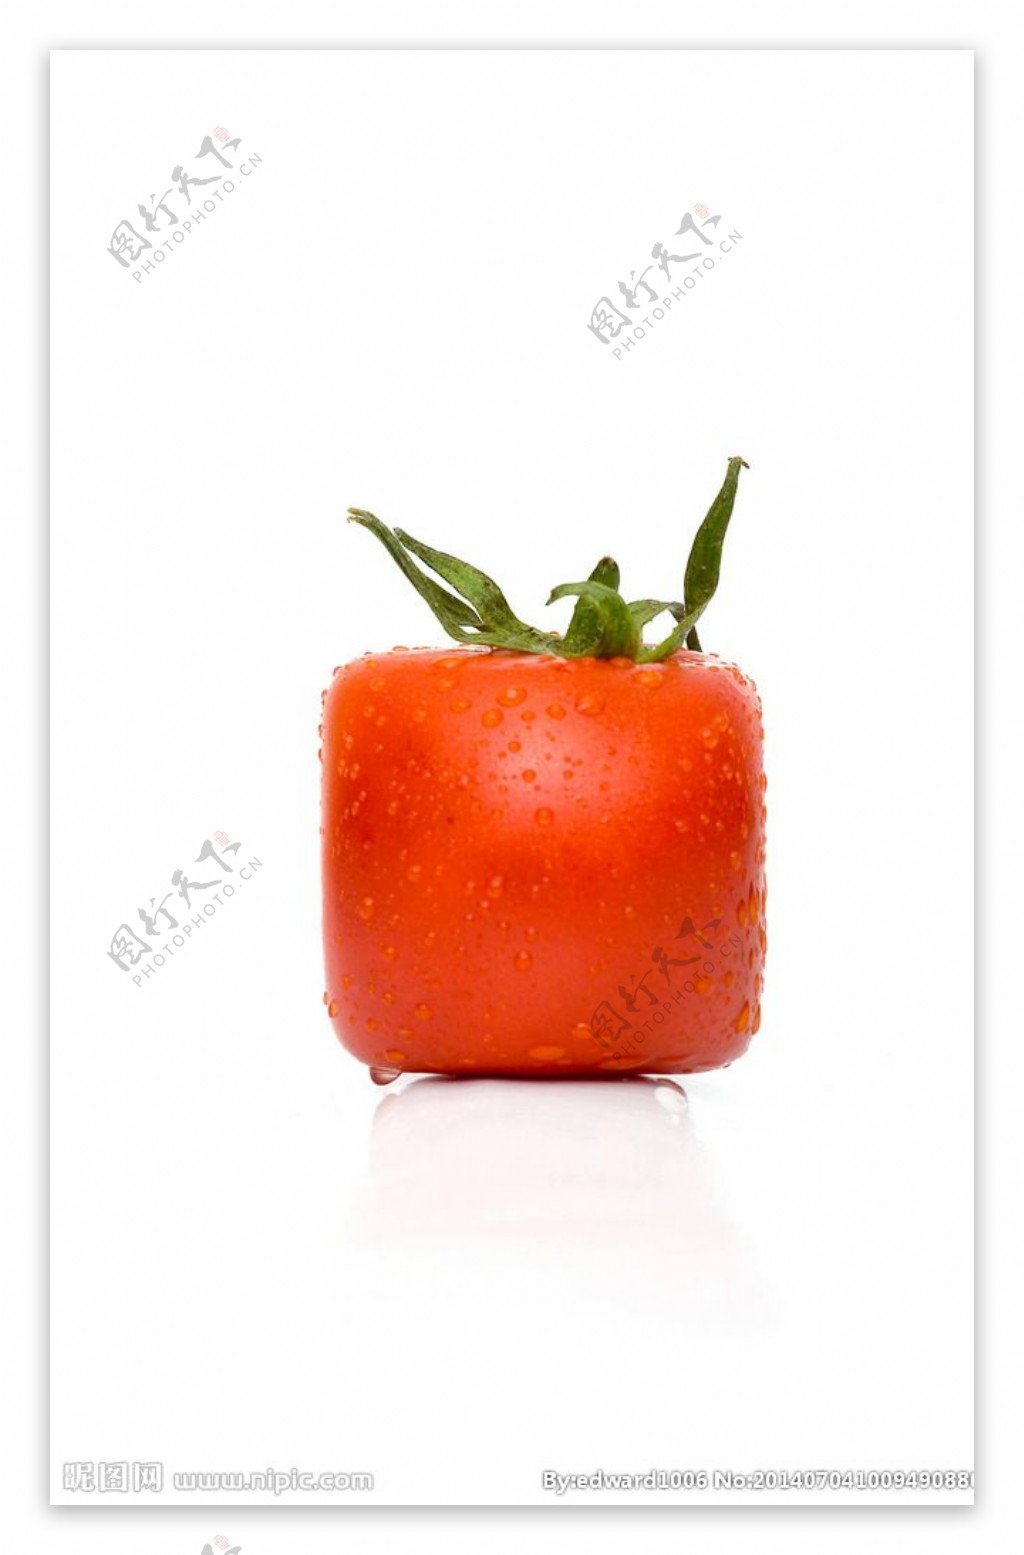 西红柿创意水果图片